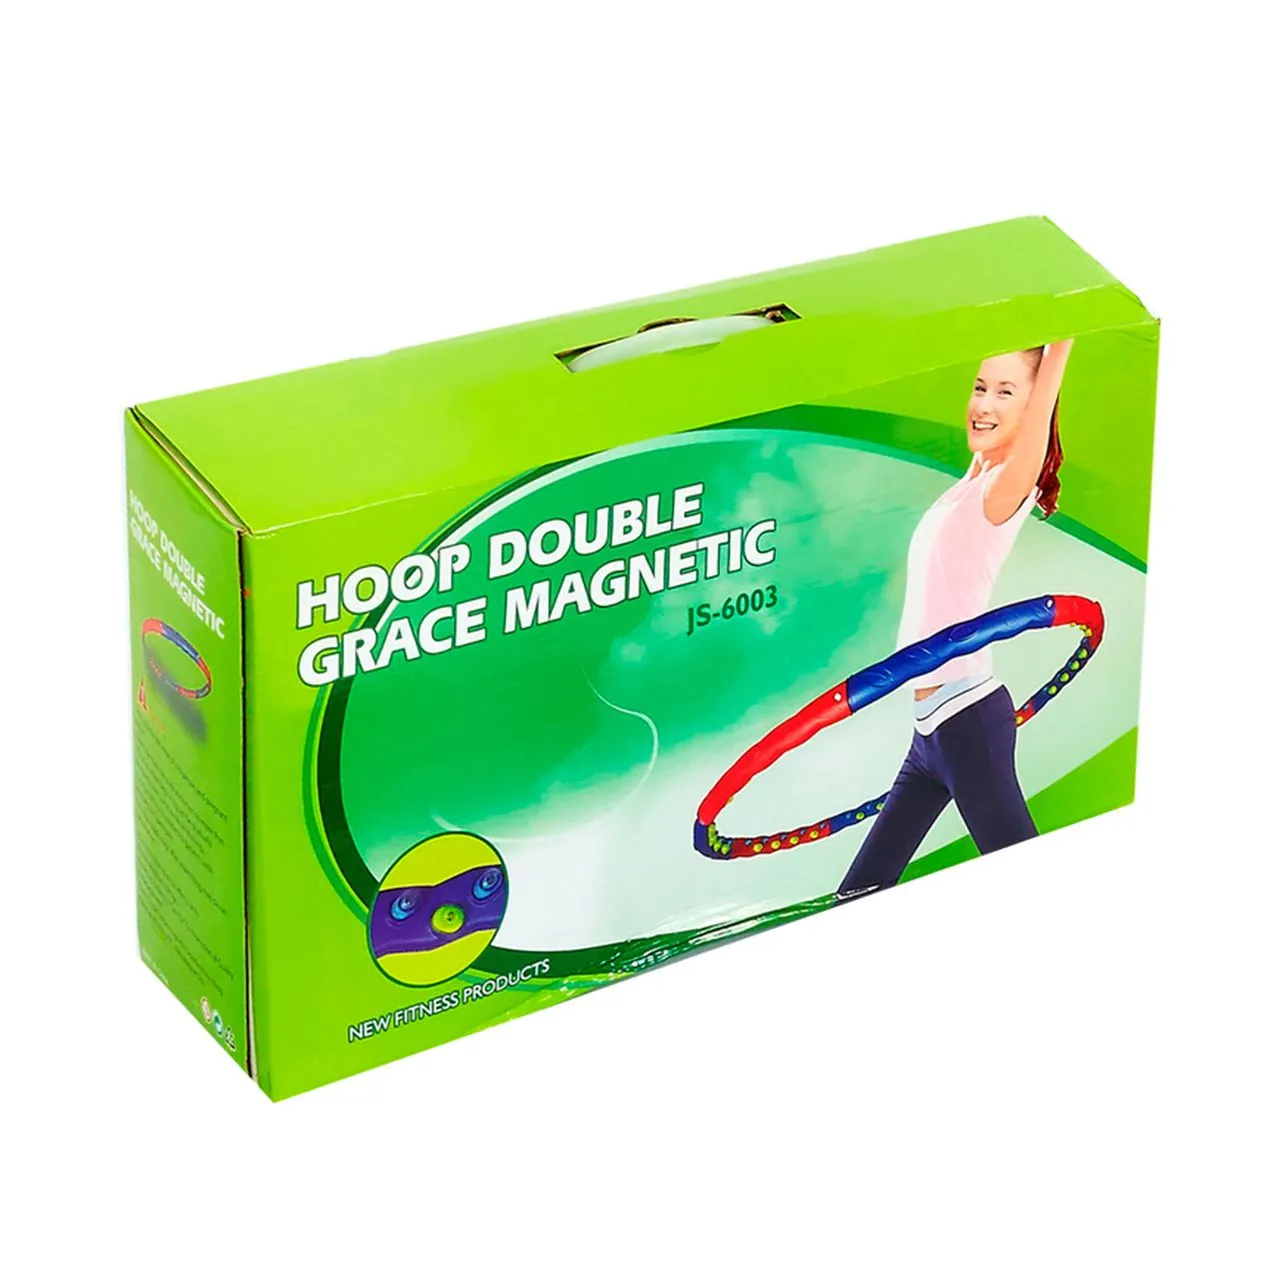 Hoop Double Grace Magnetic, JS-6003, 1,4 kg#4